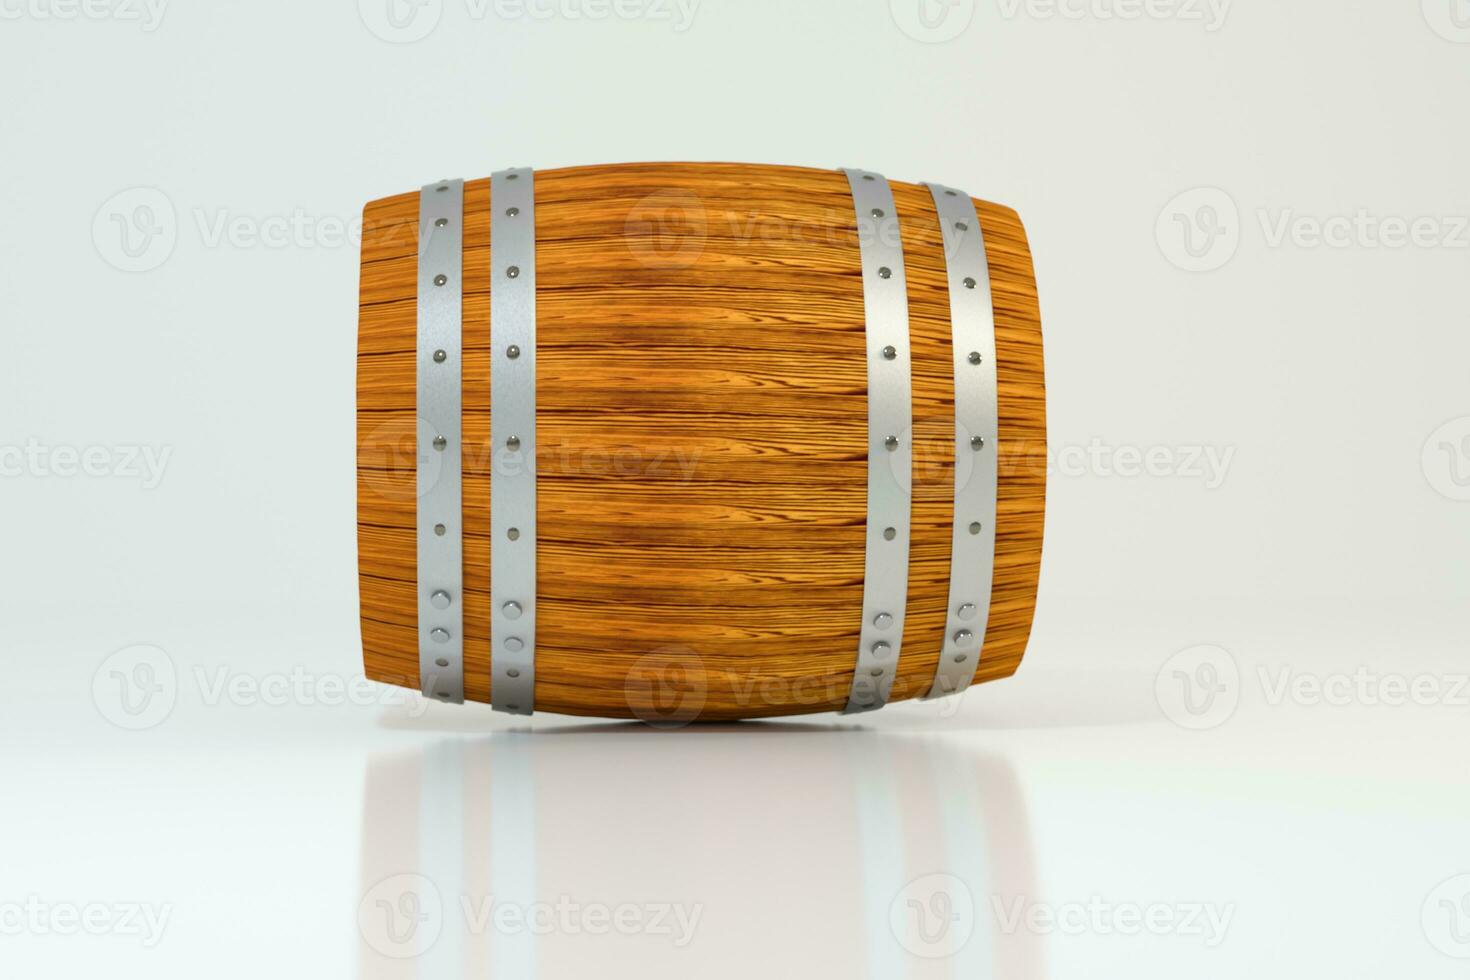 di legno azienda vinicola barile con bianca sfondo, 3d interpretazione foto